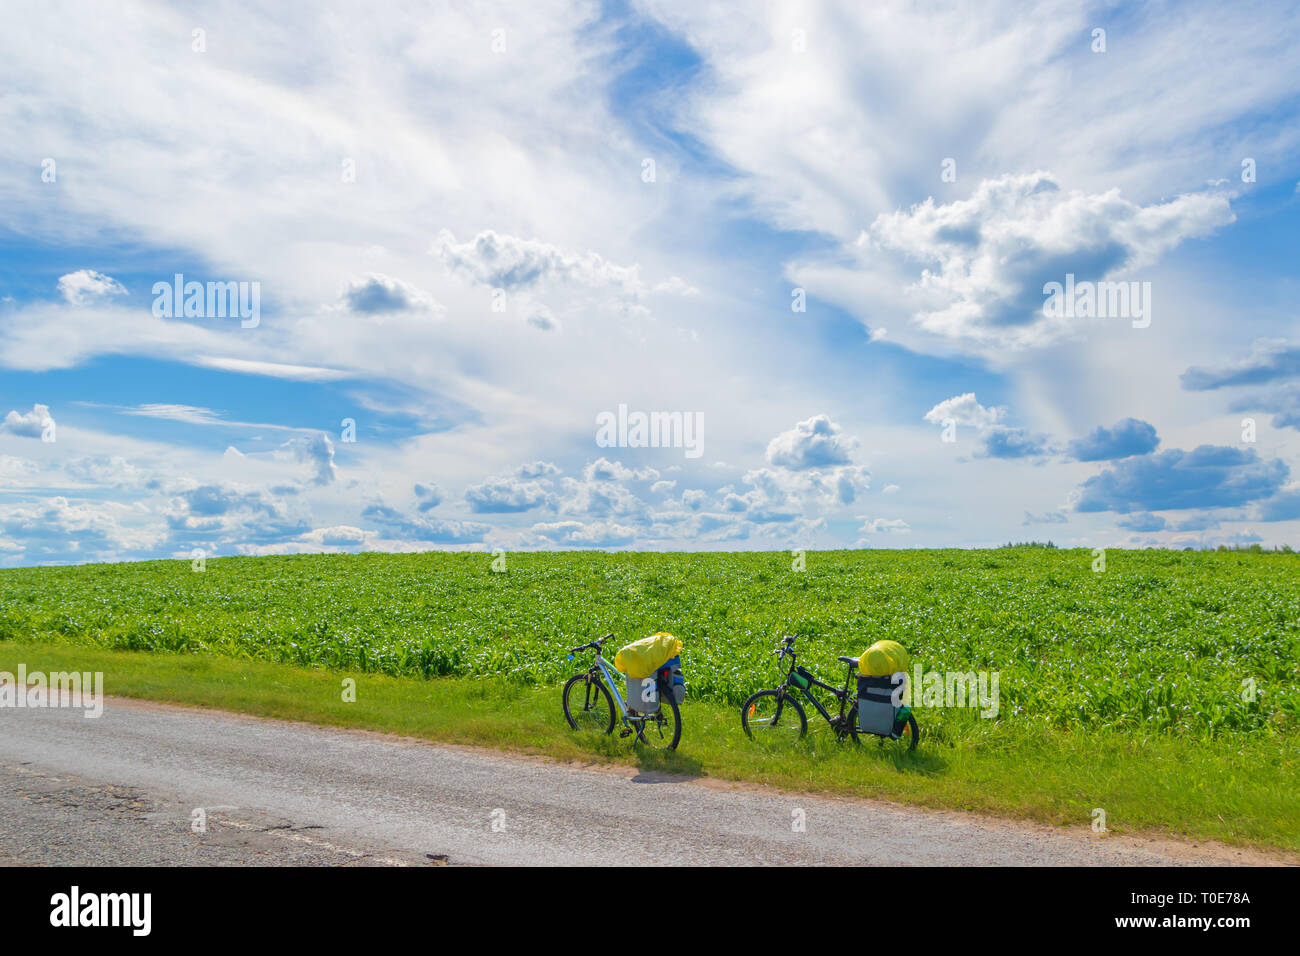 Schöne Landschaft mit einem grünen Feld und einem schönen blauen Himmel mit Wolken, zwei Fahrräder auf der Seite der Straße auf einem Halt Stockfoto